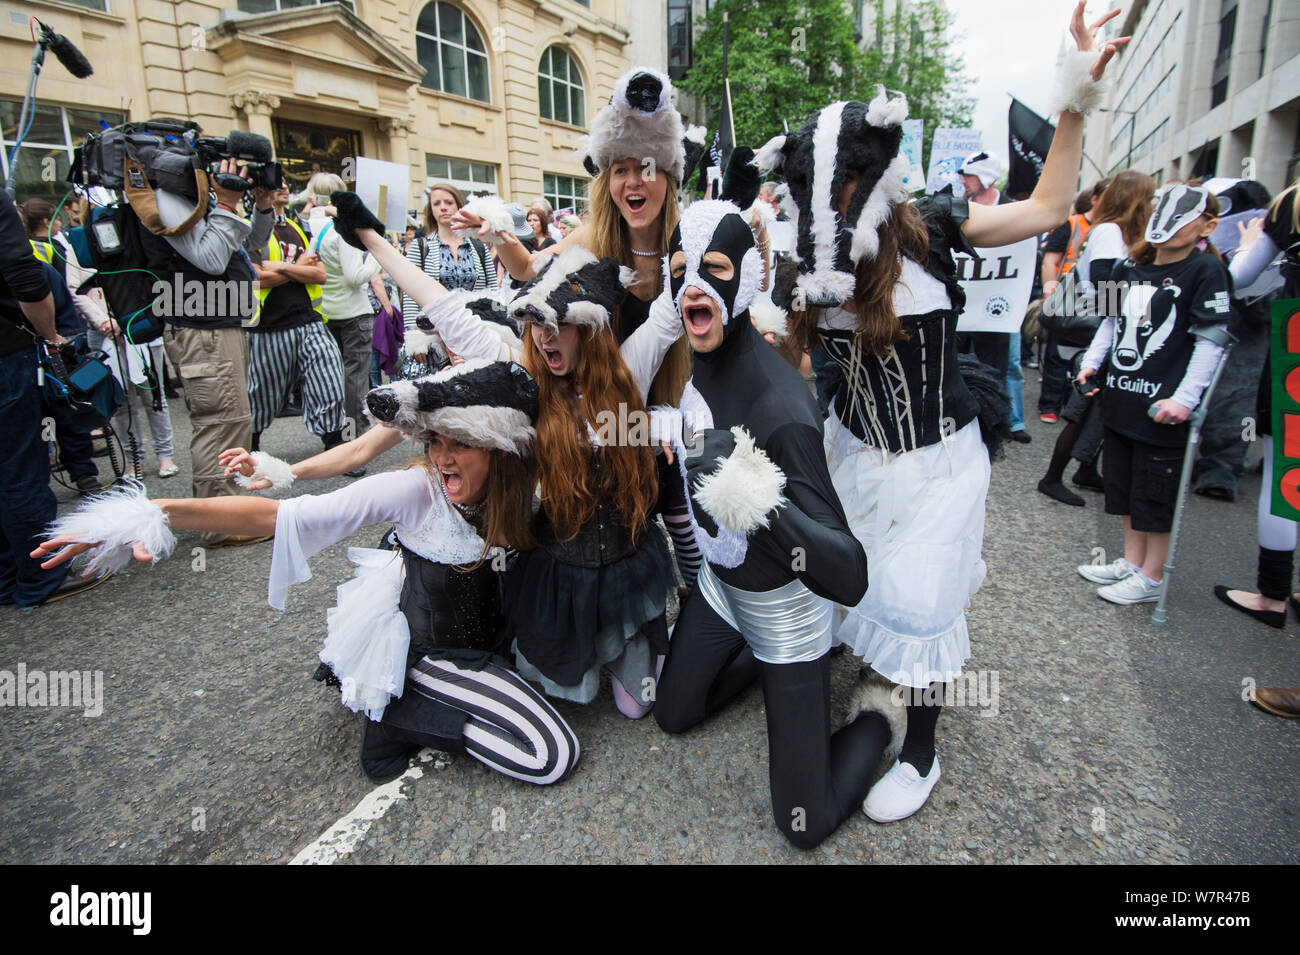 Danseurs de la Artful Badger Group, la danse en costumes, blaireau Blaireau anti cull, mars 1er juin 2013 à Londres. Banque D'Images